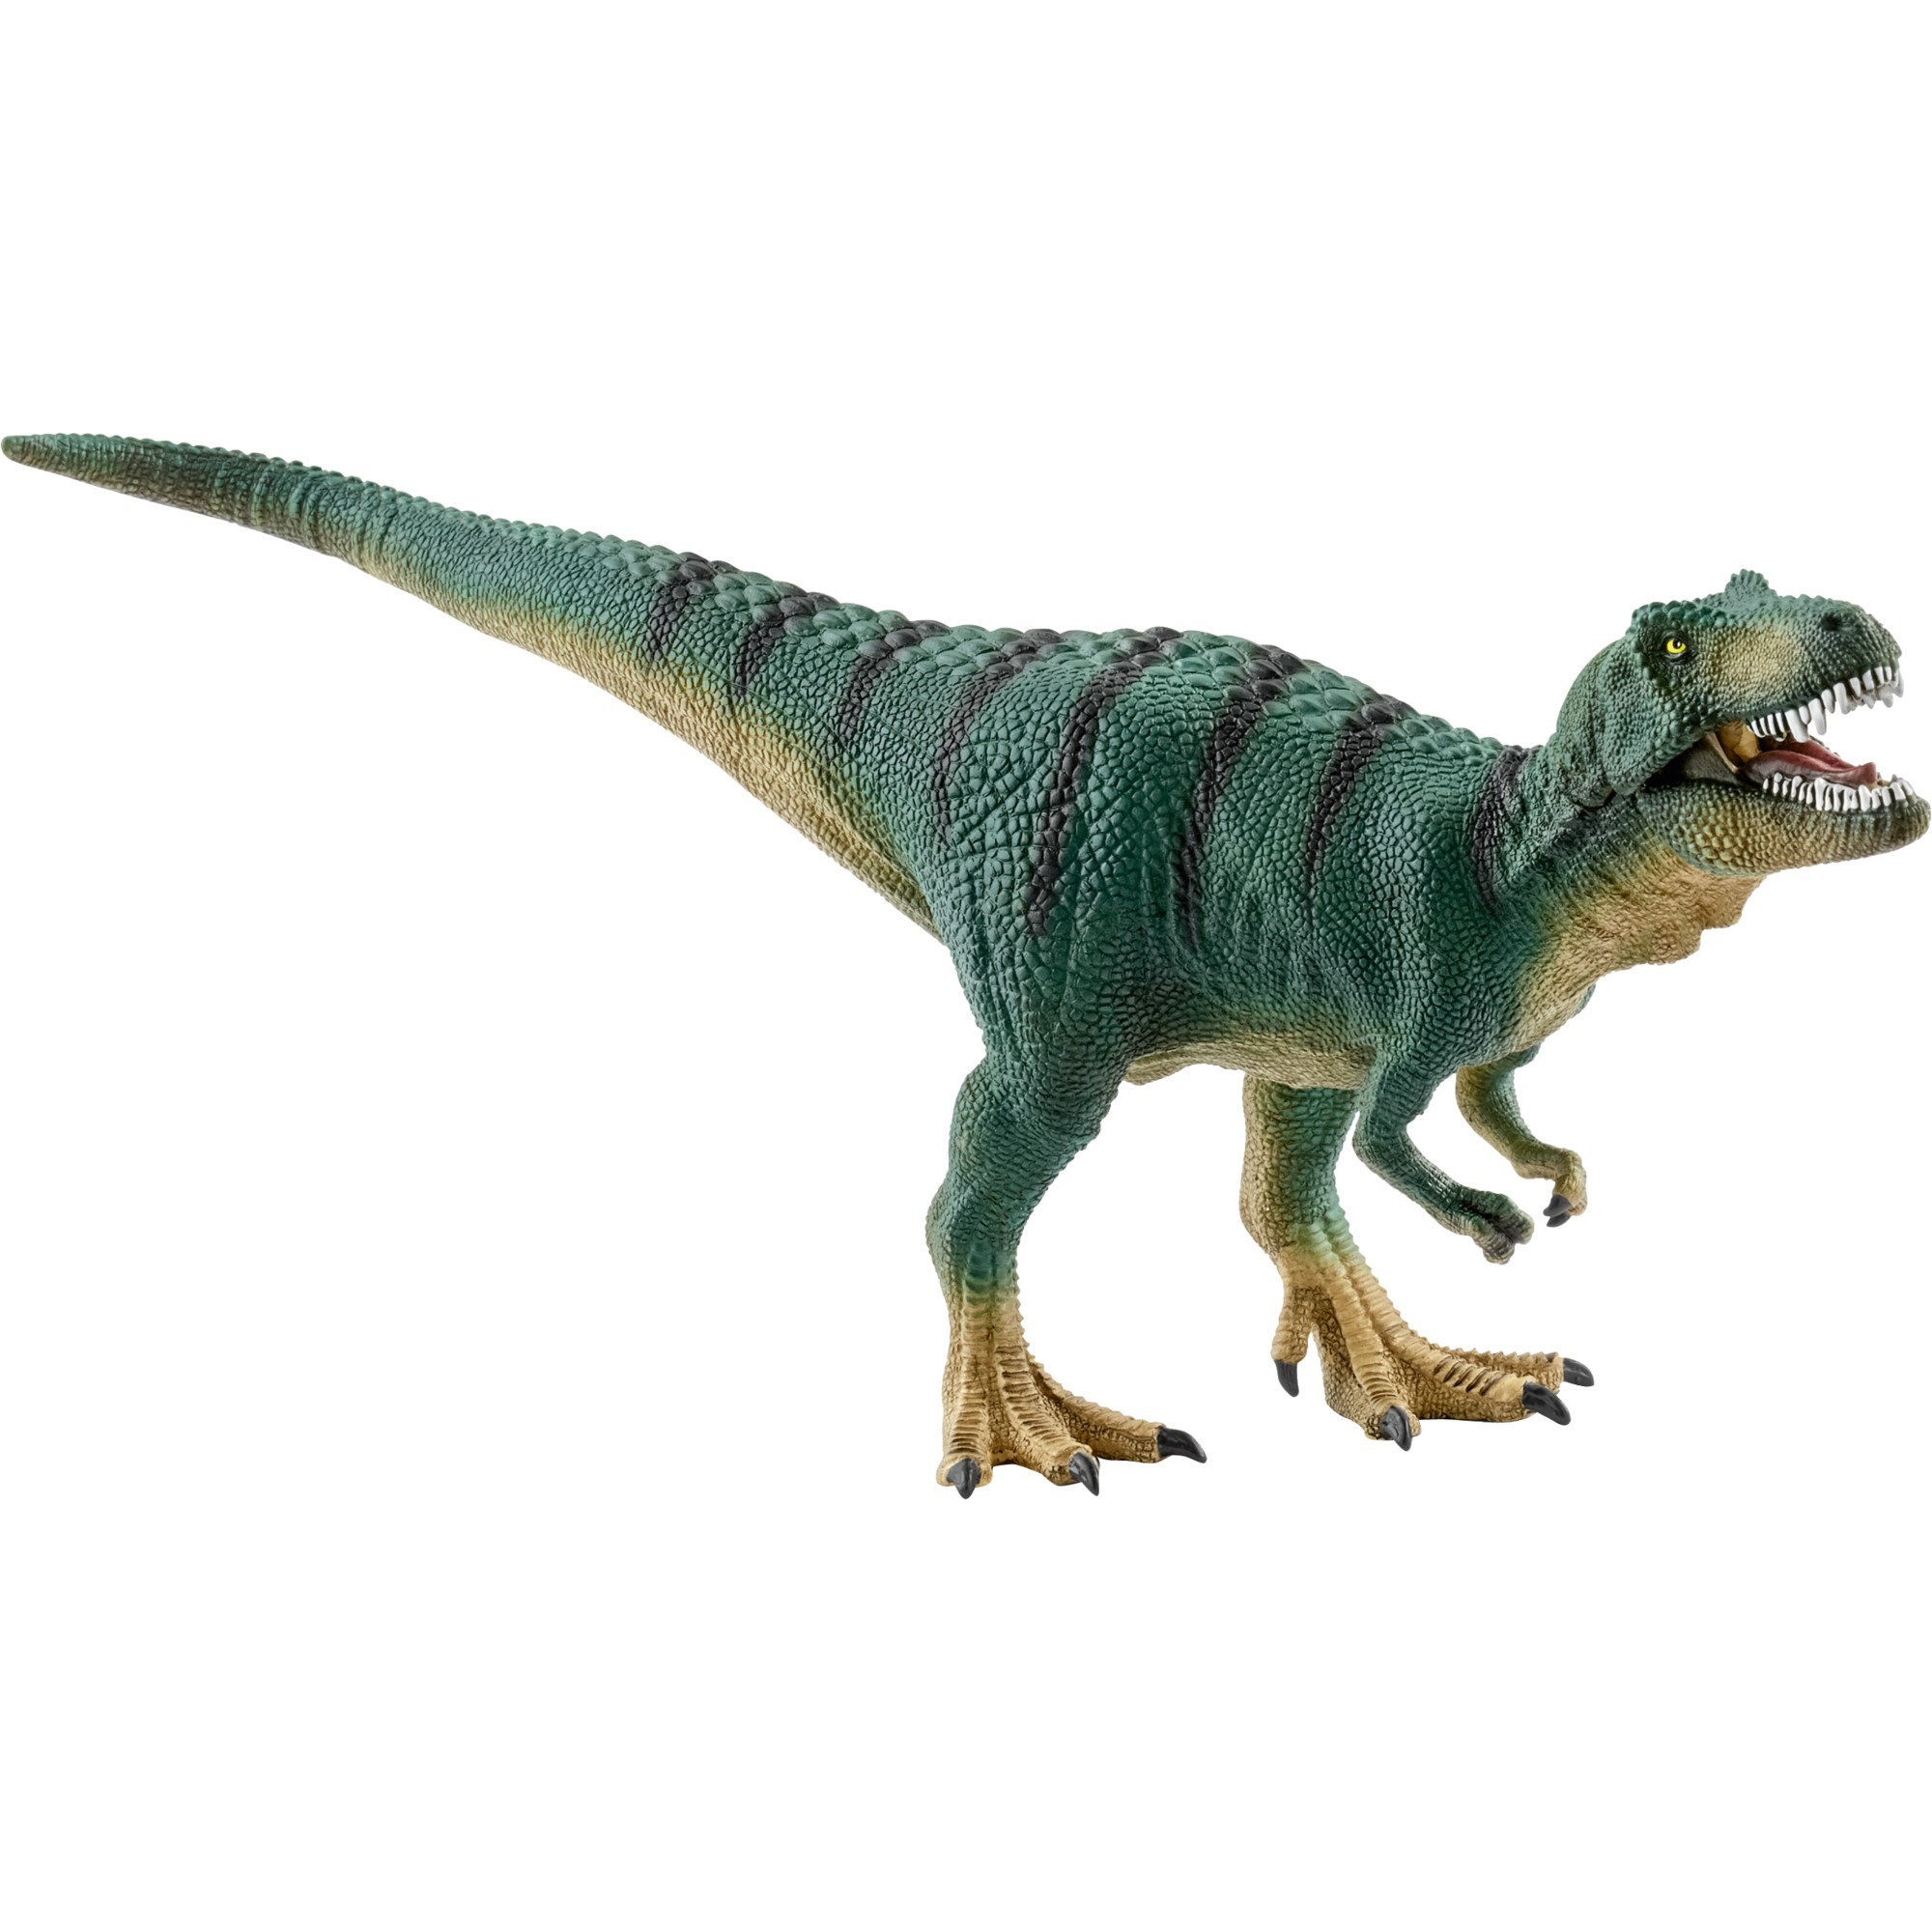 Image of Alternate - Dinosaurier Jungtier Tyrannosaurus Rex, Spielfigur online einkaufen bei Alternate